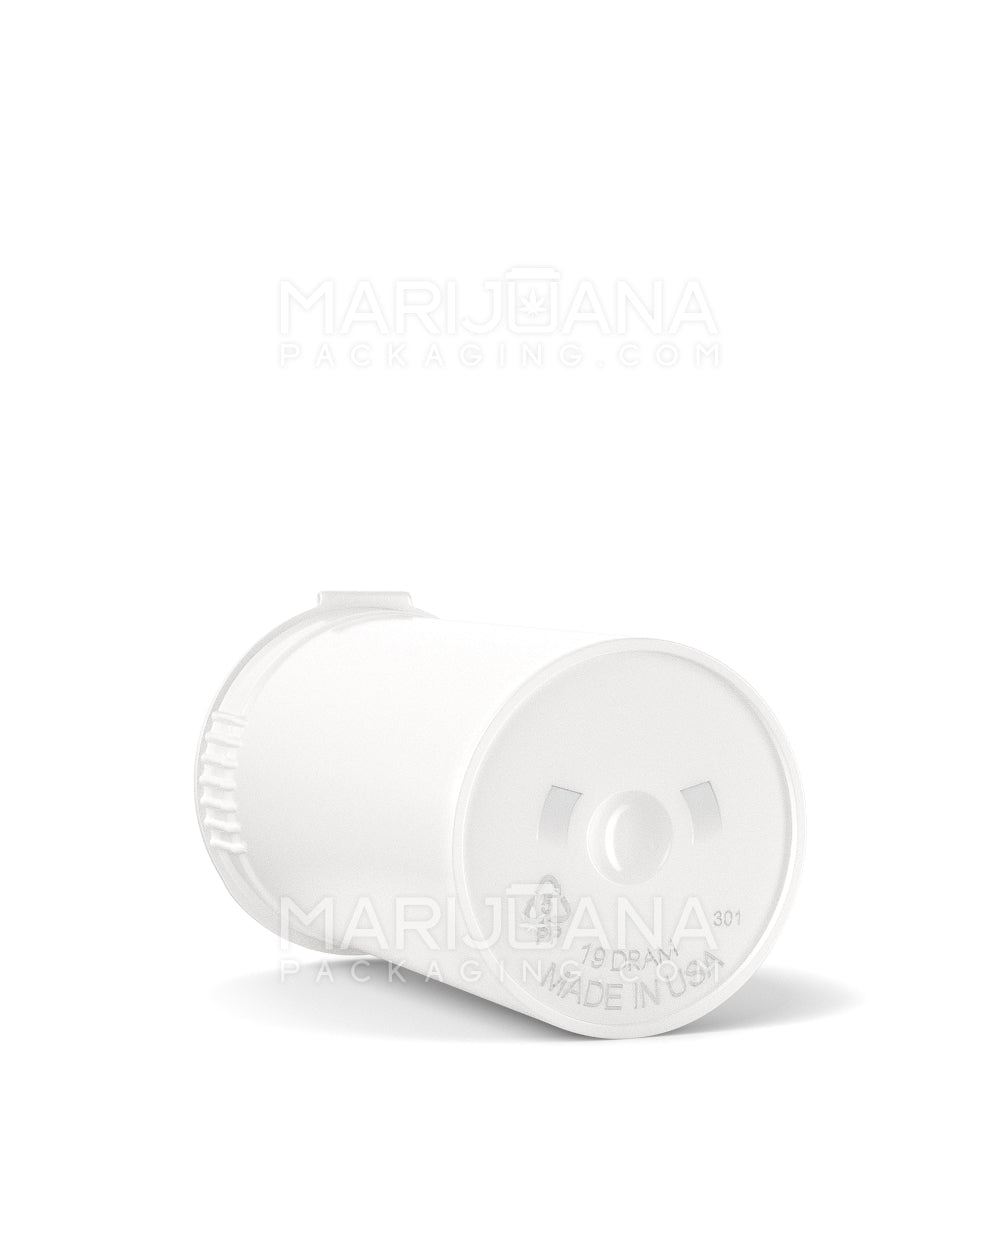 POLLEN GEAR | Child Resistant KSC Opaque White Pop Top Bottles | 19dr - 3.5g - 416 Count - 4